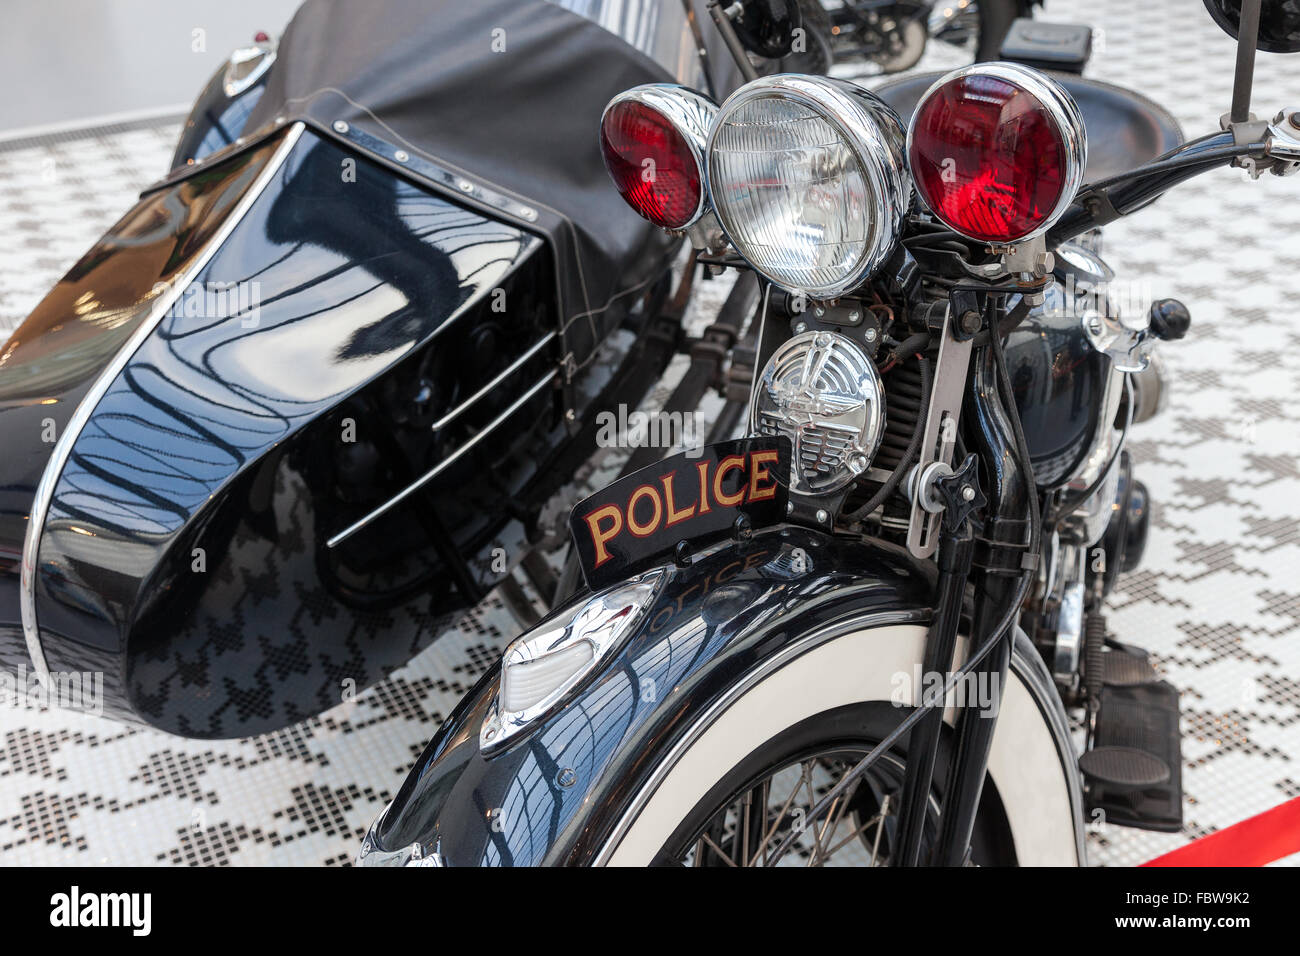 La partie avant de la Harley Davidson moto rétro police close up Banque D'Images